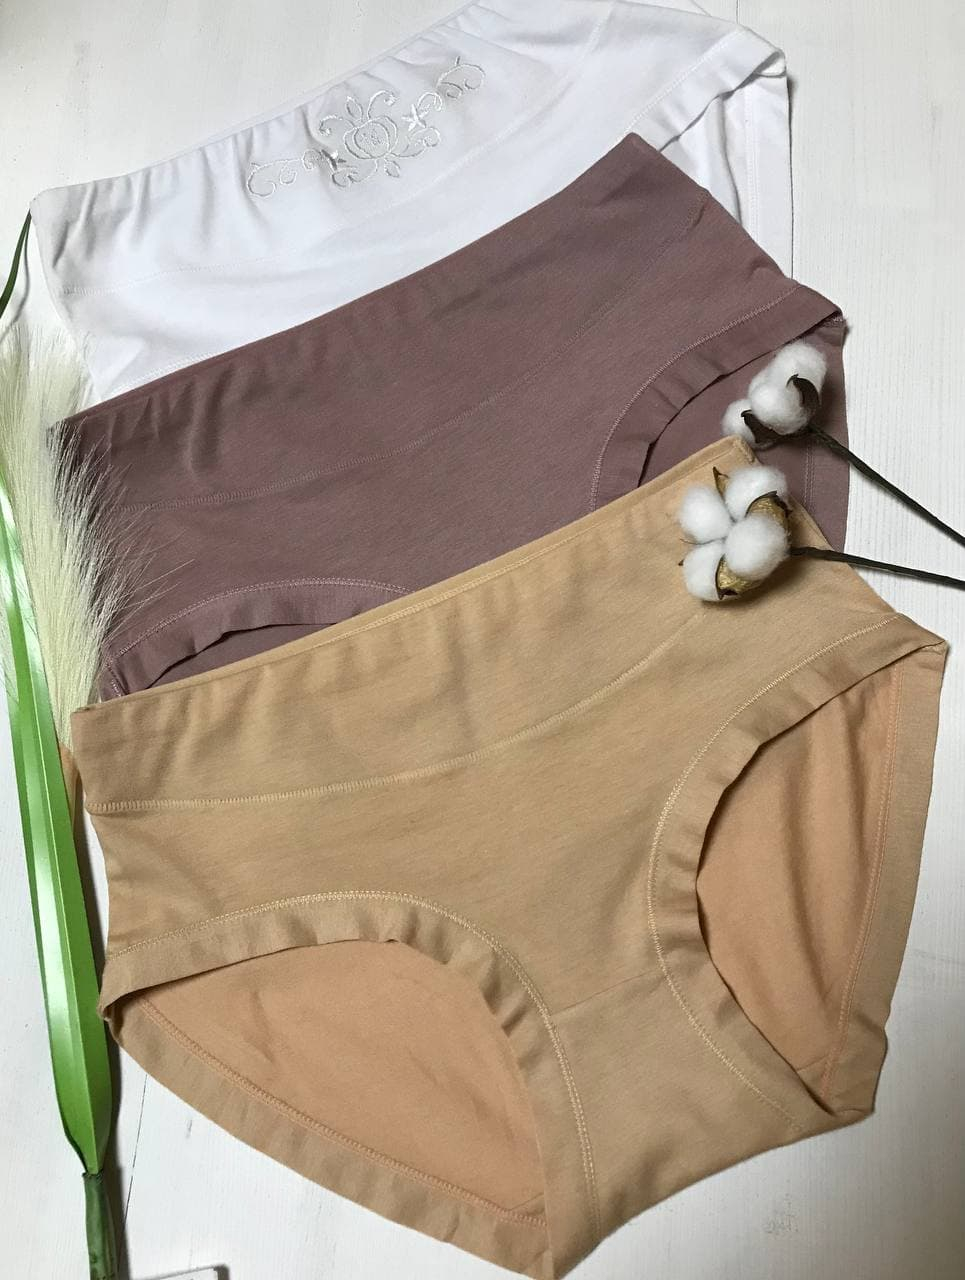 Девушка в нижнем белье: изображения без лицензионных платежей